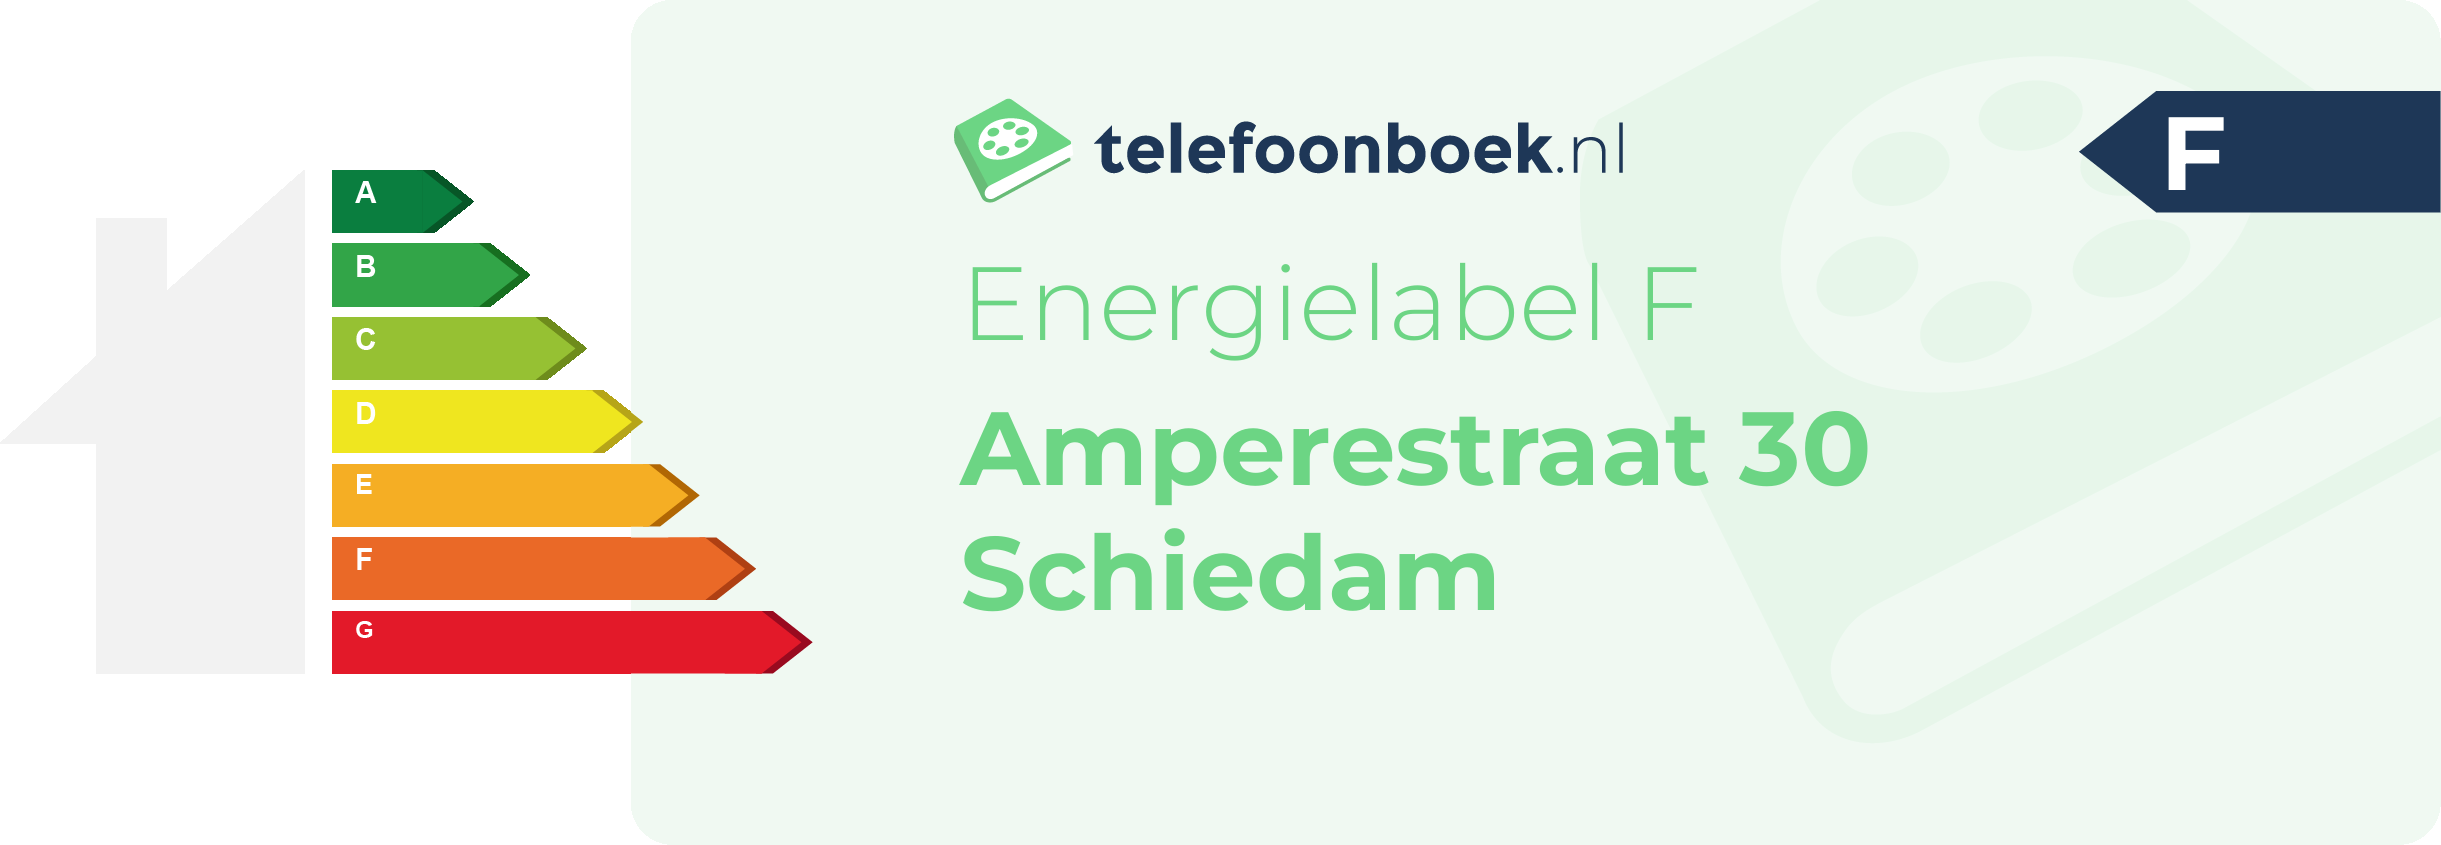 Energielabel Amperestraat 30 Schiedam